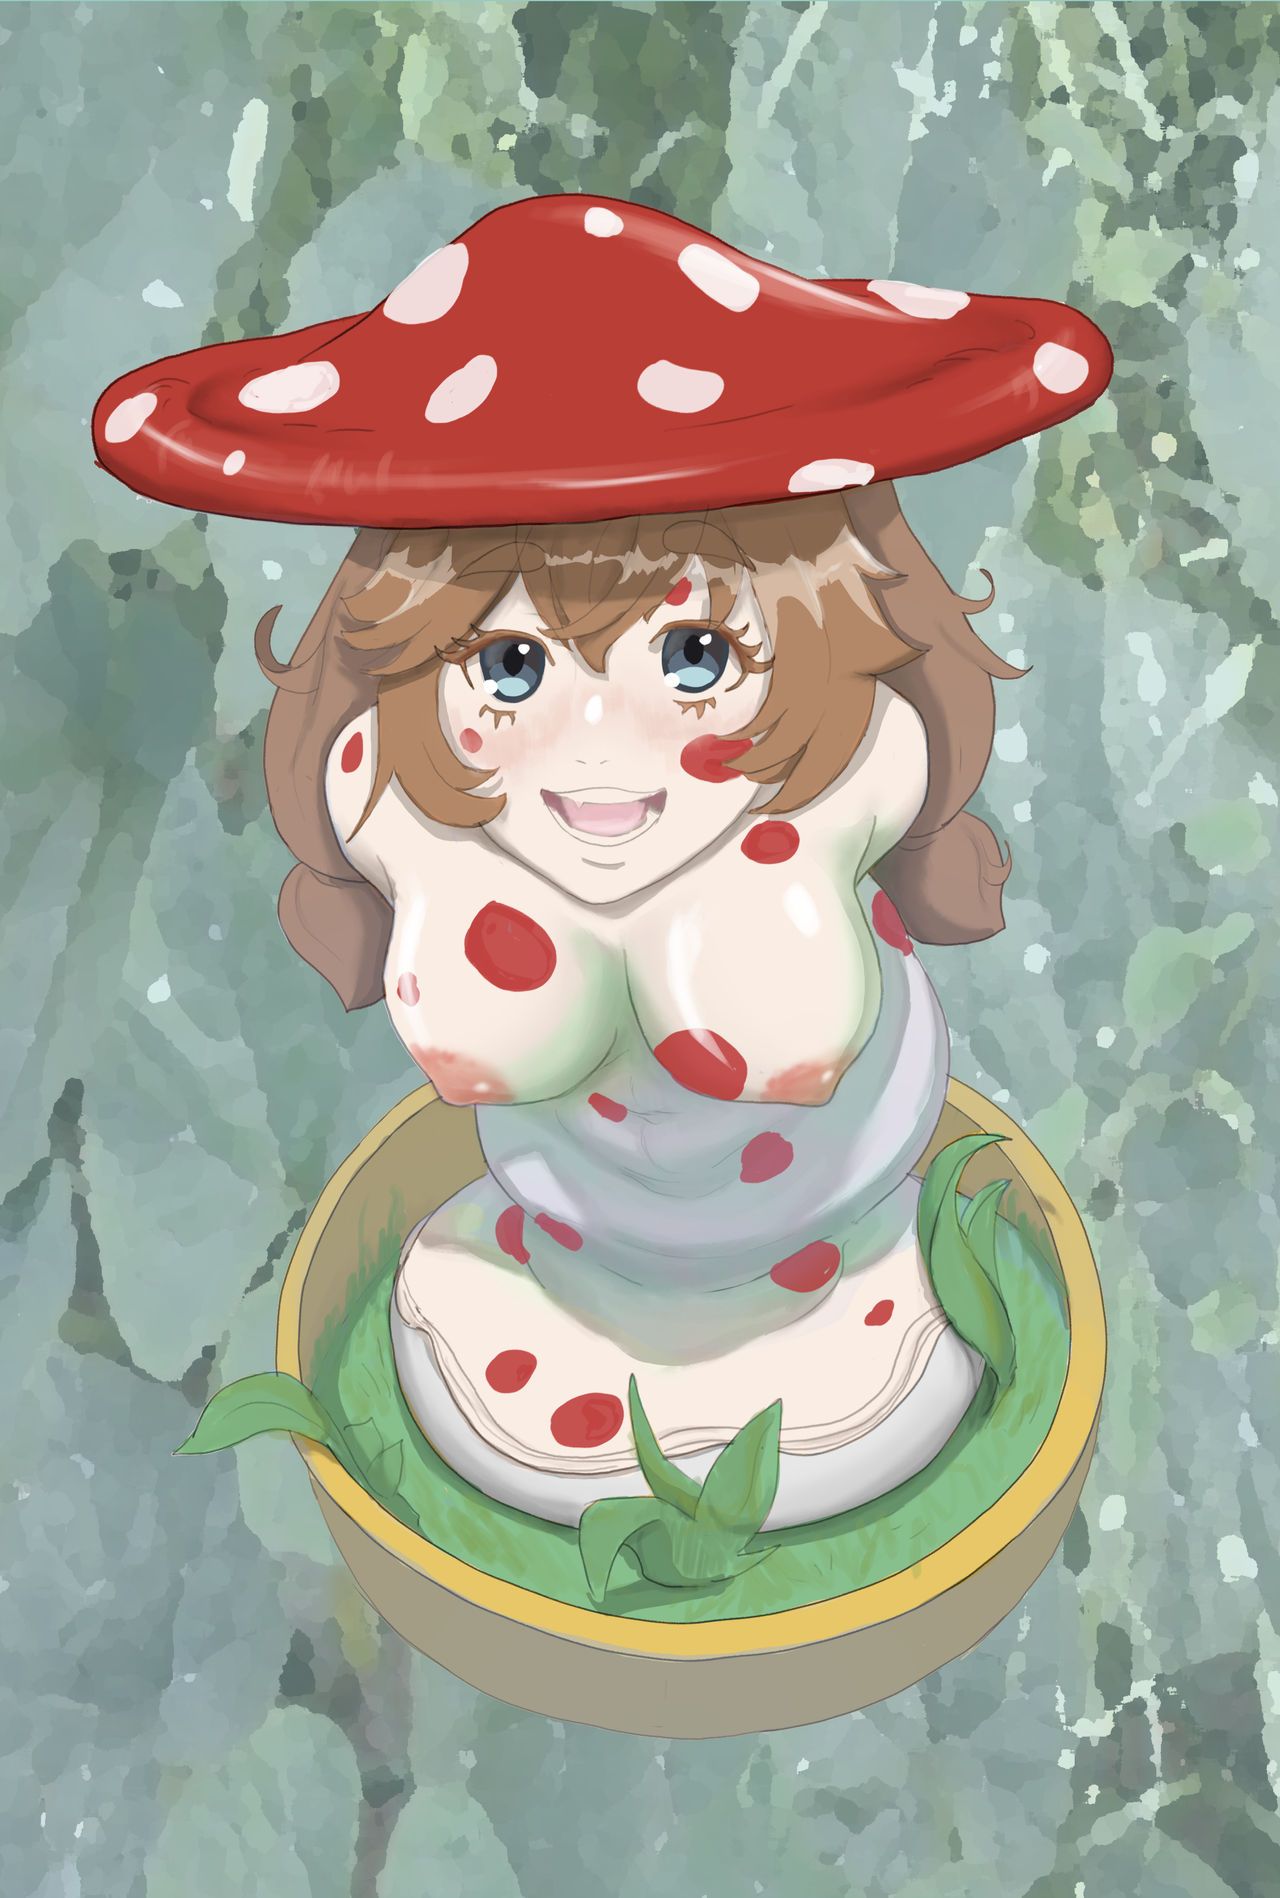 mushroomate_illustration_by_chum03_deaagme-fullview.jpg